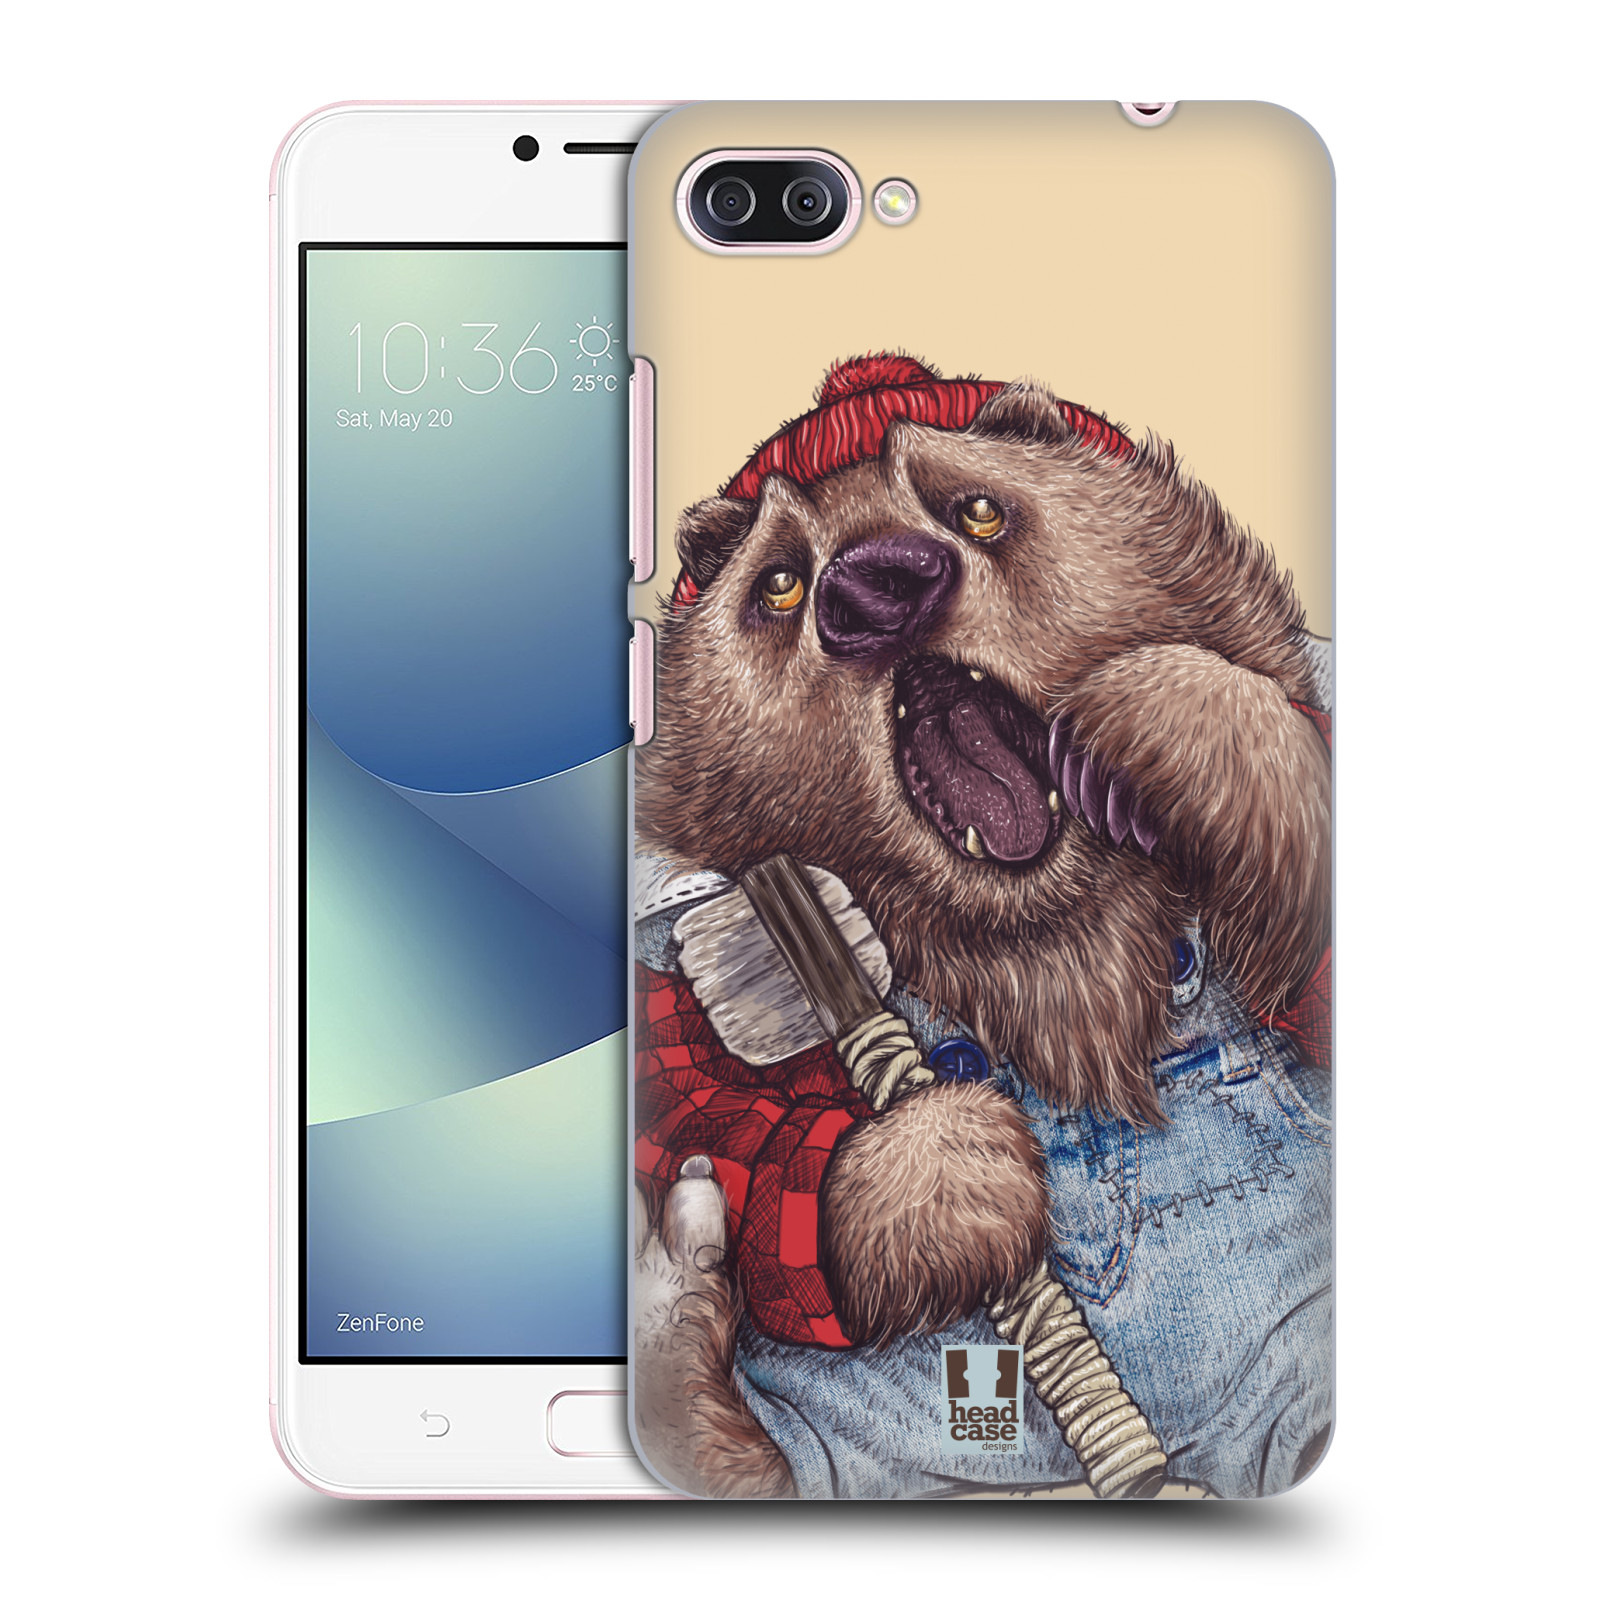 HEAD CASE plastový obal na mobil Asus Zenfone 4 MAX ZC554KL vzor Kreslená zvířátka medvěd